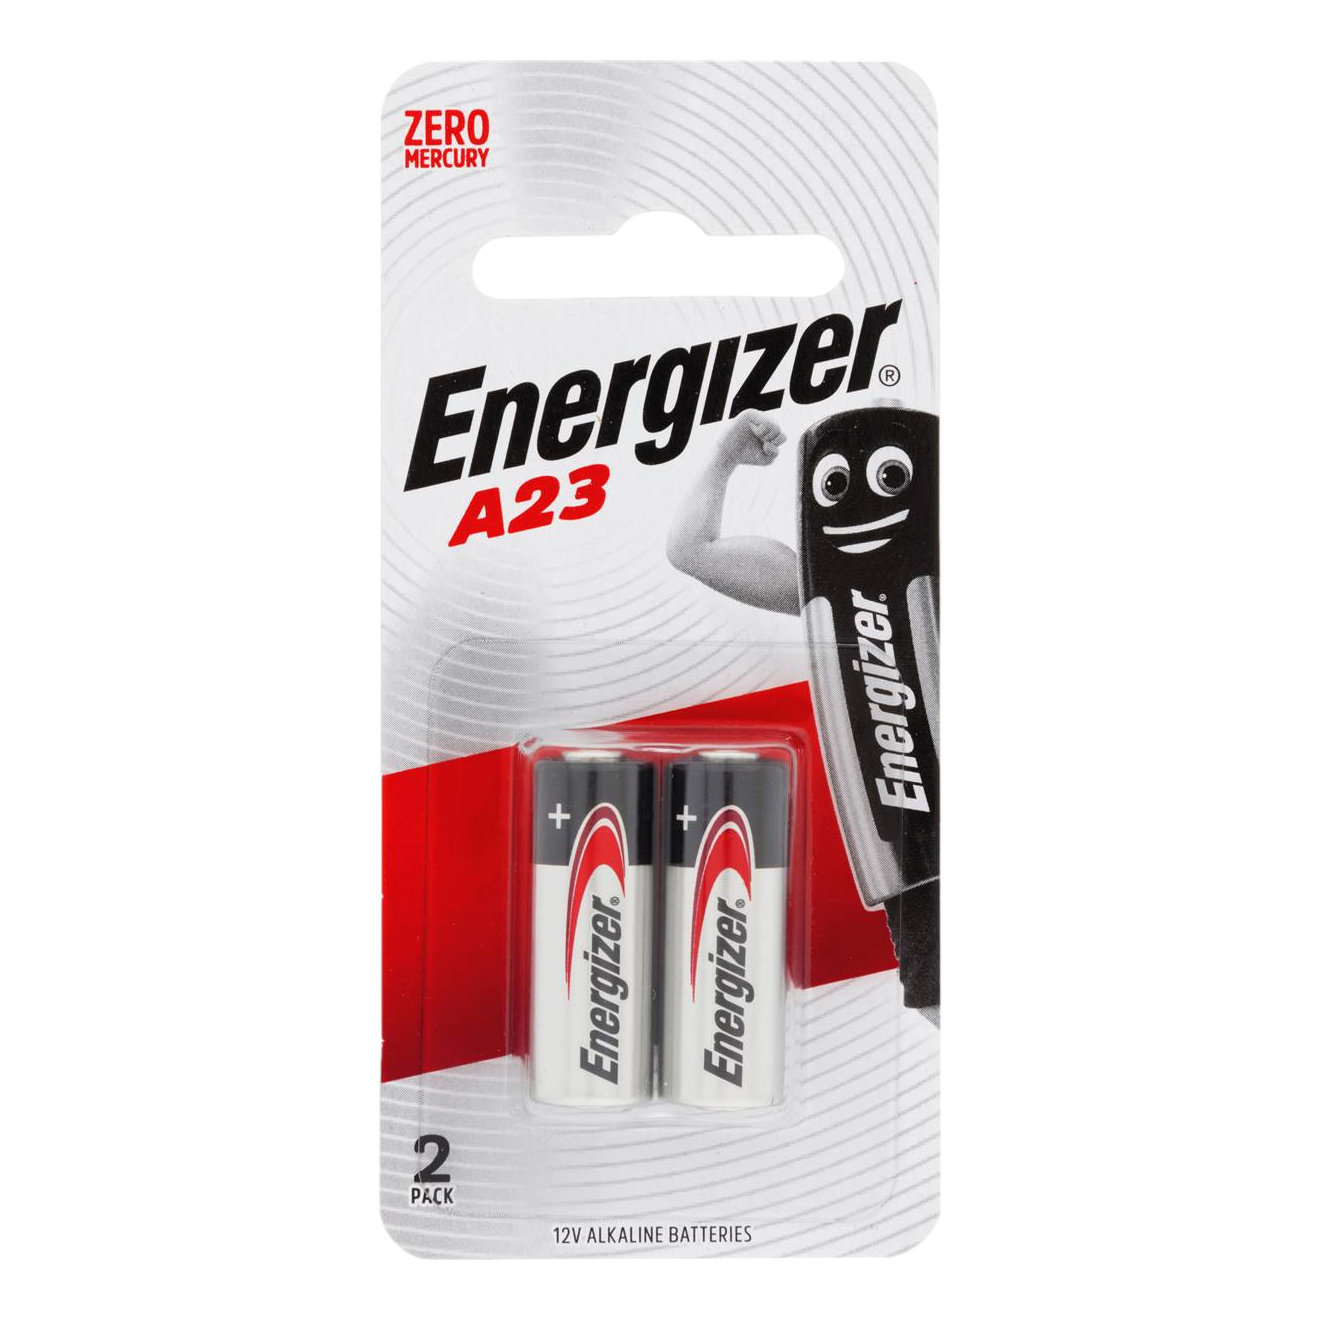 Energizer Battery A23 12V 2 Pack